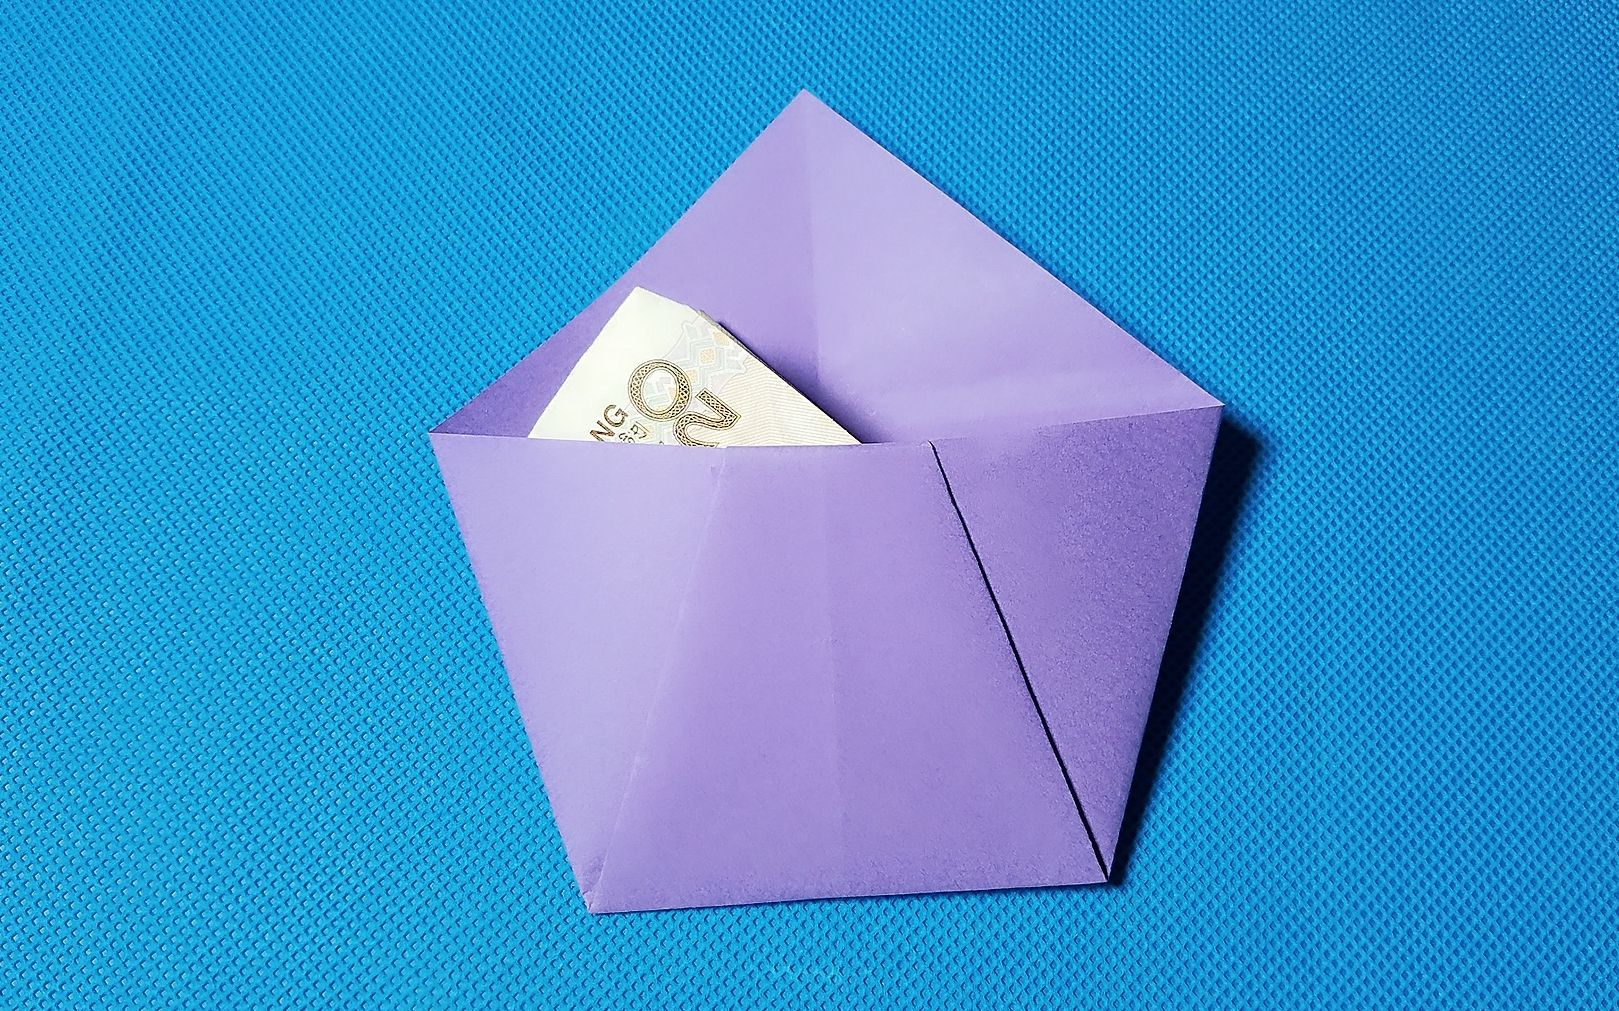 【折纸教程】折纸王子 简单钱包 讲解详细一看就会